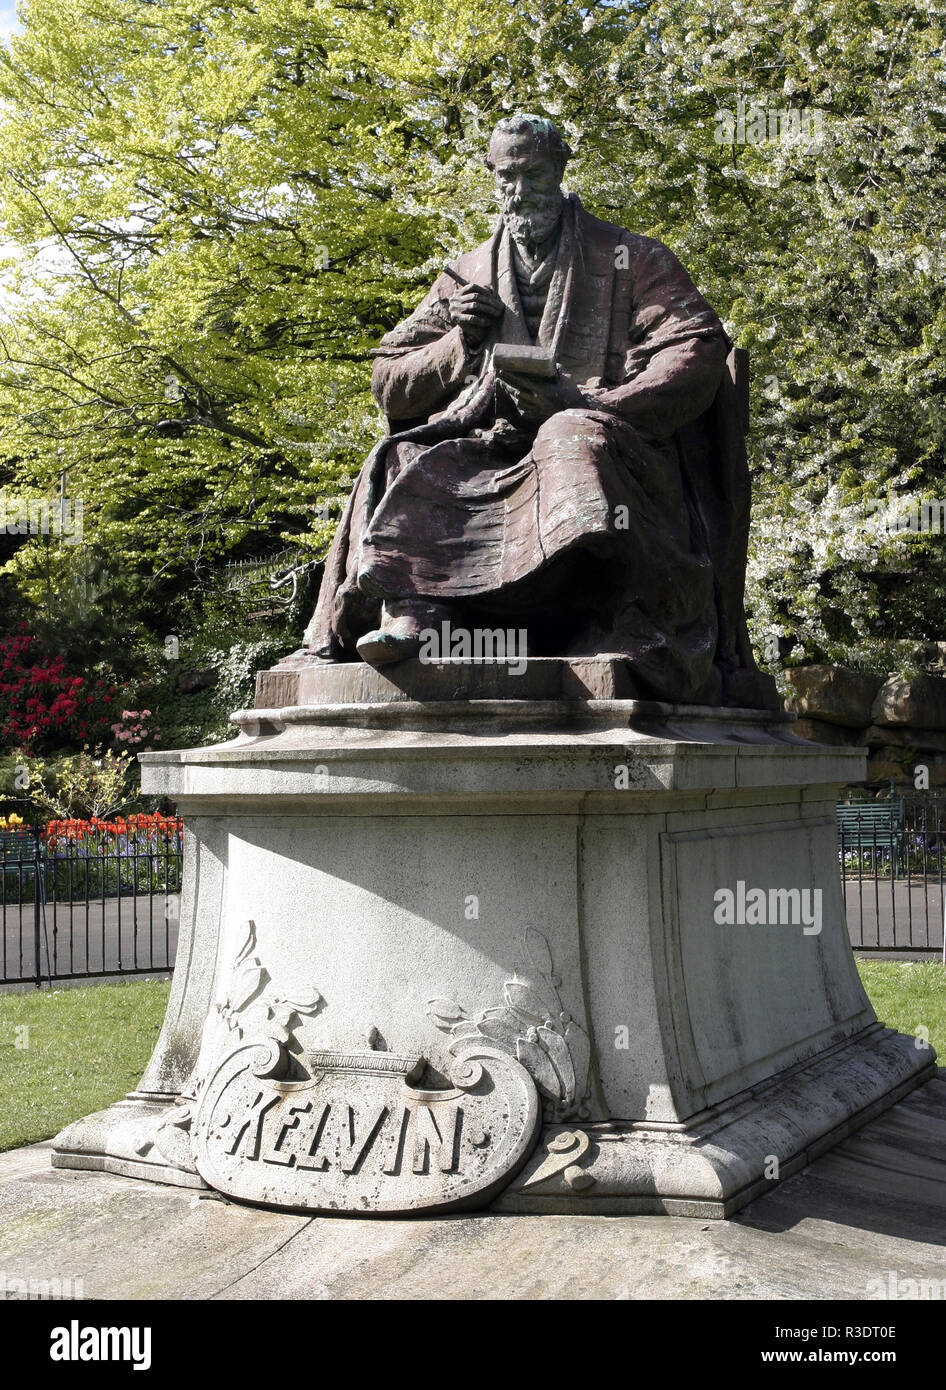 Cette statue de Lord Kelvin (William Thomson), qui était un physicien et ingénieur et est mieux connu pour la conception de l'échelle de température absolue. La statue se trouve dans le parc de Kelvingrove à côté de la rivière Kelvin à Glasgow. Banque D'Images